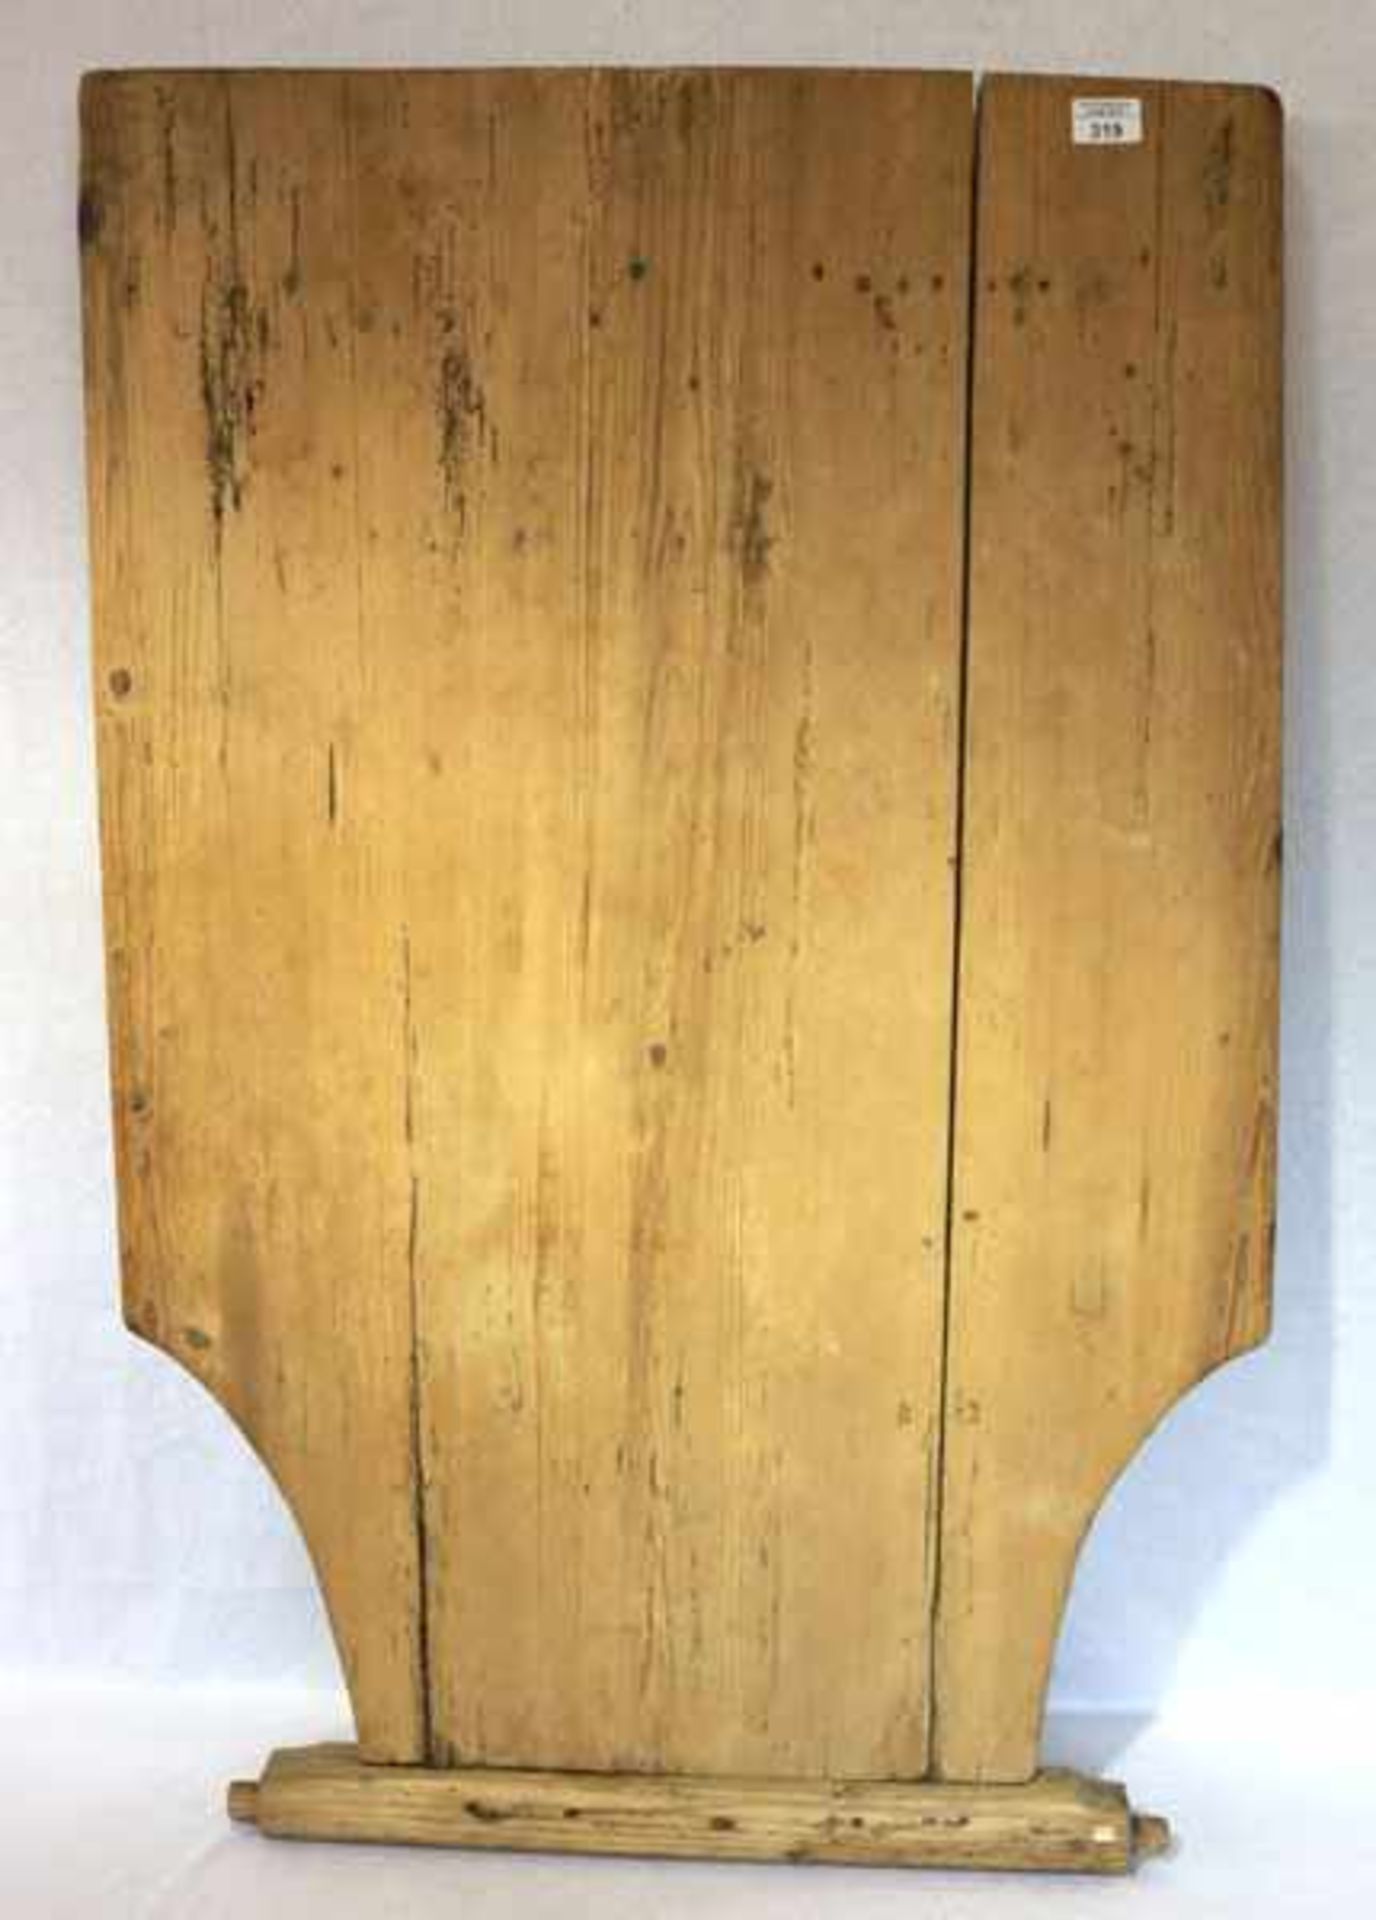 Wand-Klapptisch, um 1900, H 70 cm, B 68 cm, T 106 cm, Gebrauchs- und Altersspuren, Wandbefstigung